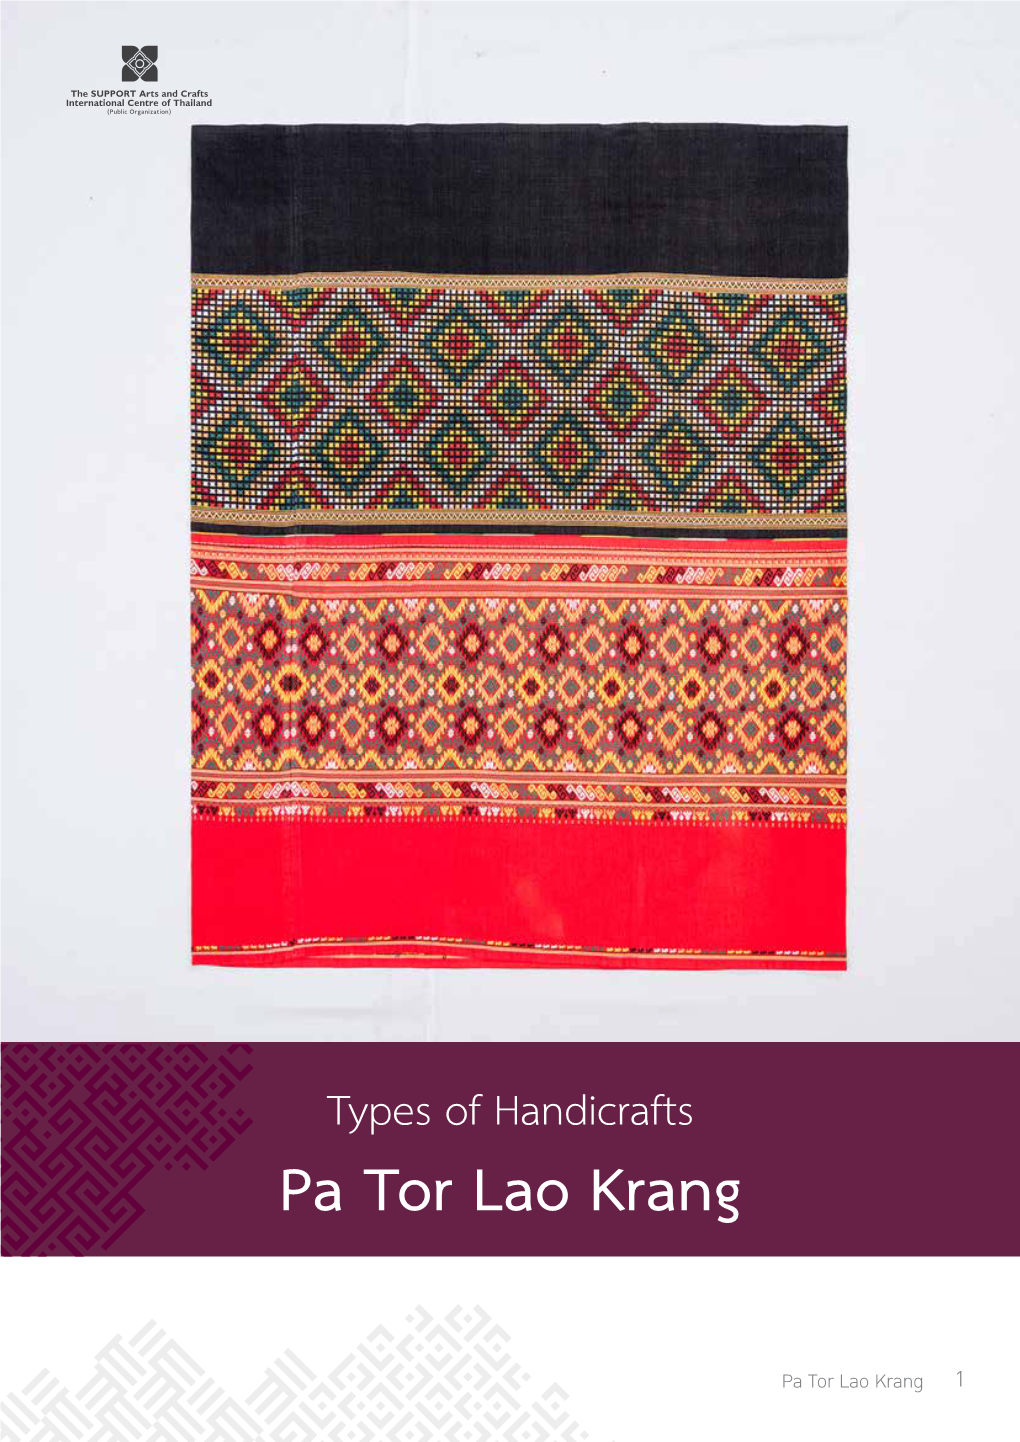 Pa Tor Lao Krang